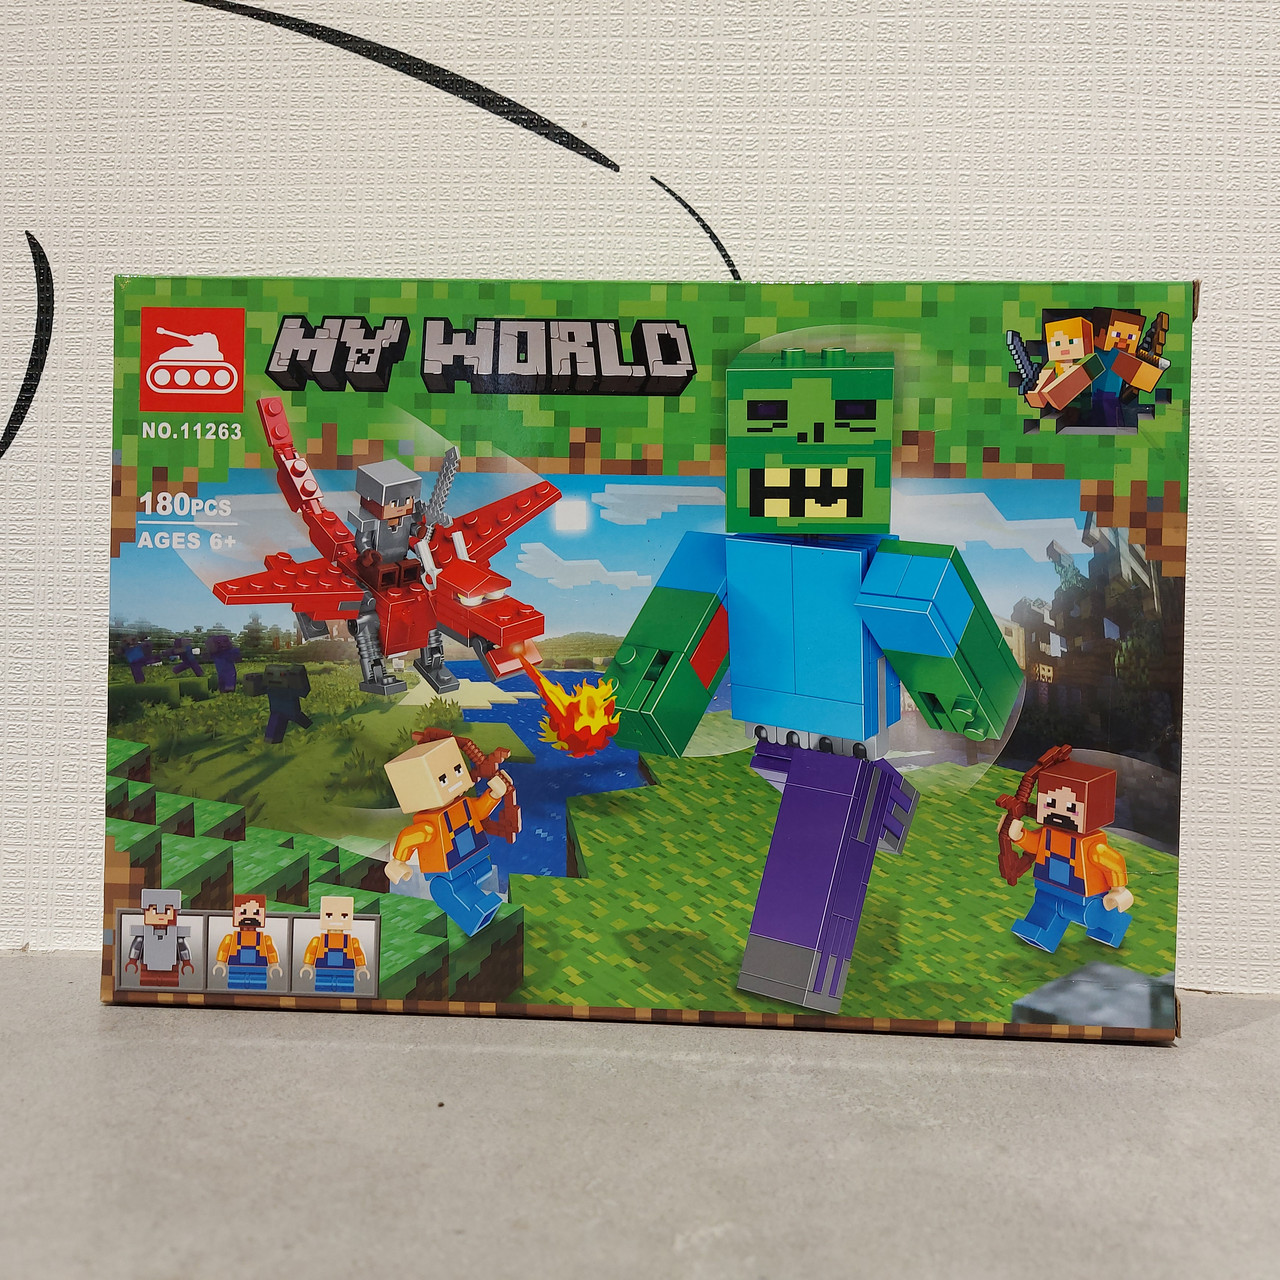 Конструктор My world 11263 180 pcs. "Битва с Зомби-великаном". Minecraft. Майнкрафт.